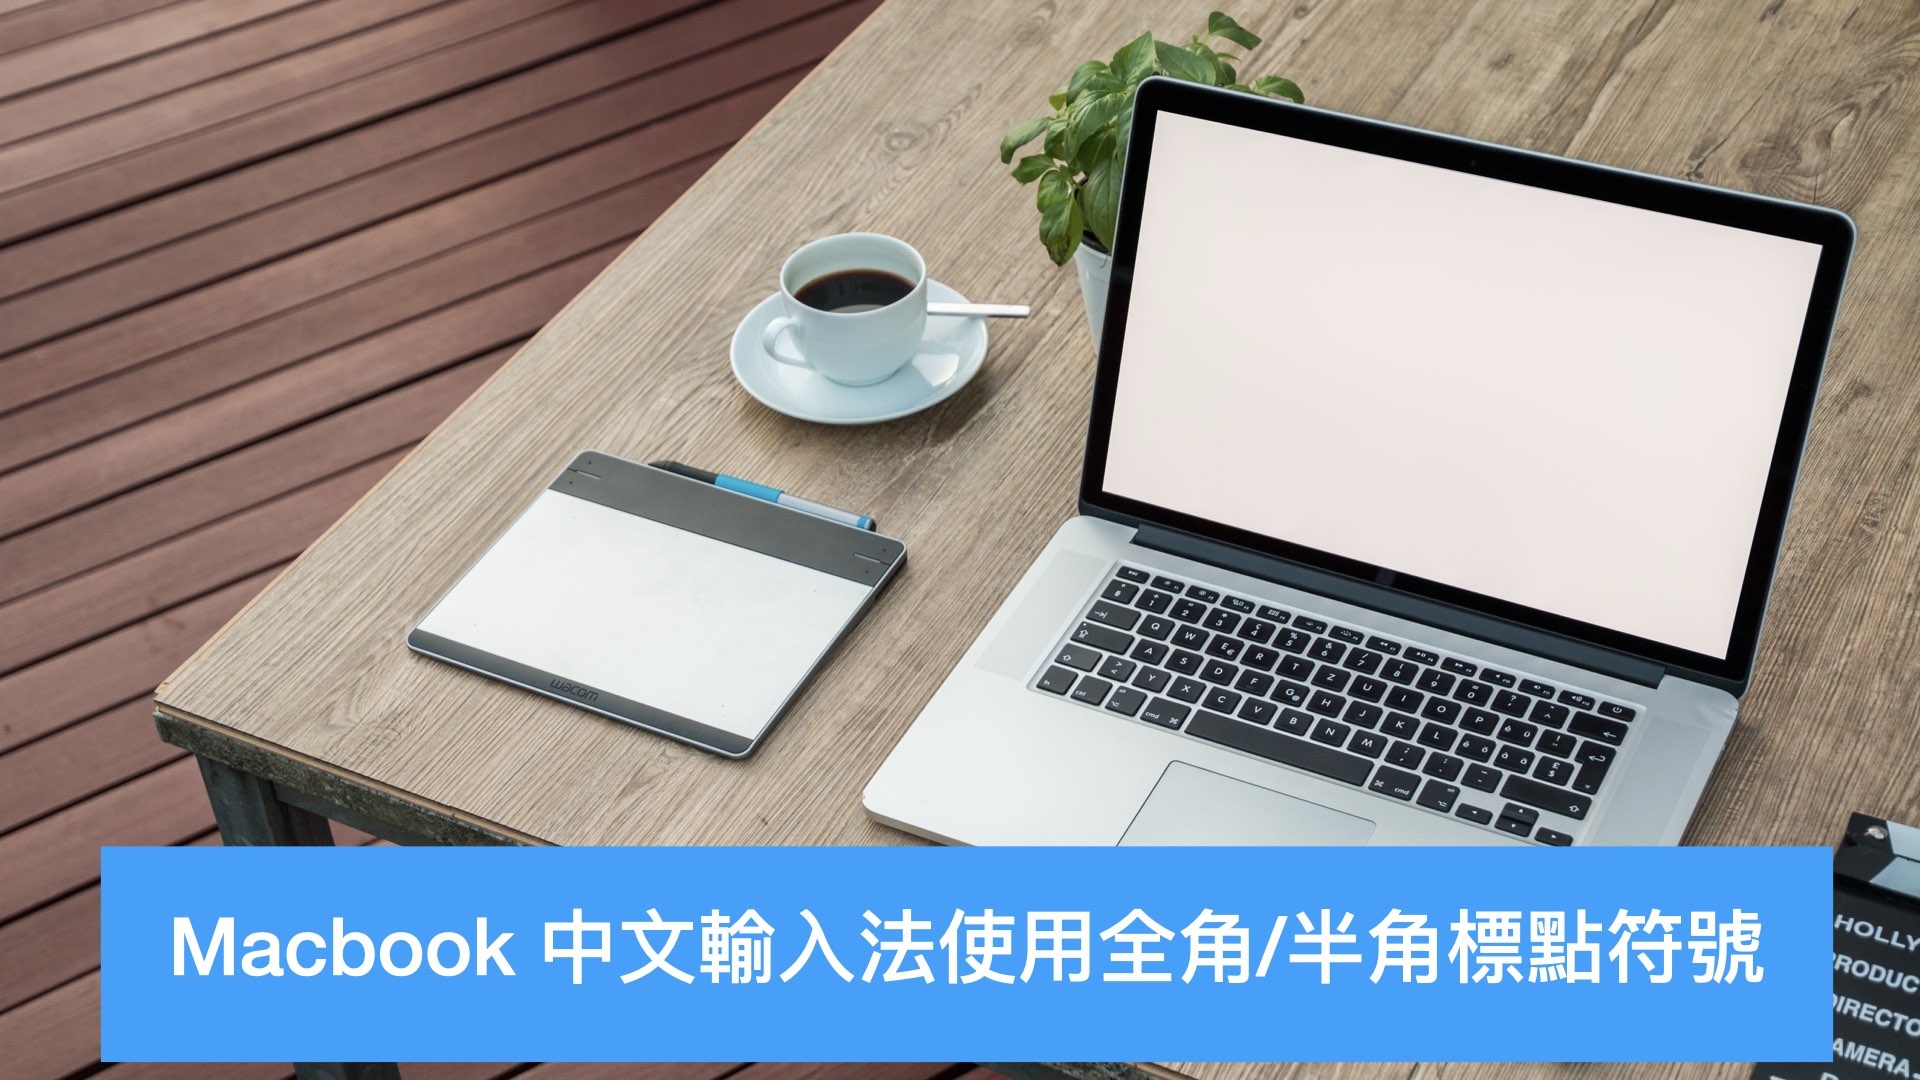 Macbook 中文输入法使用全角/半角标点符号